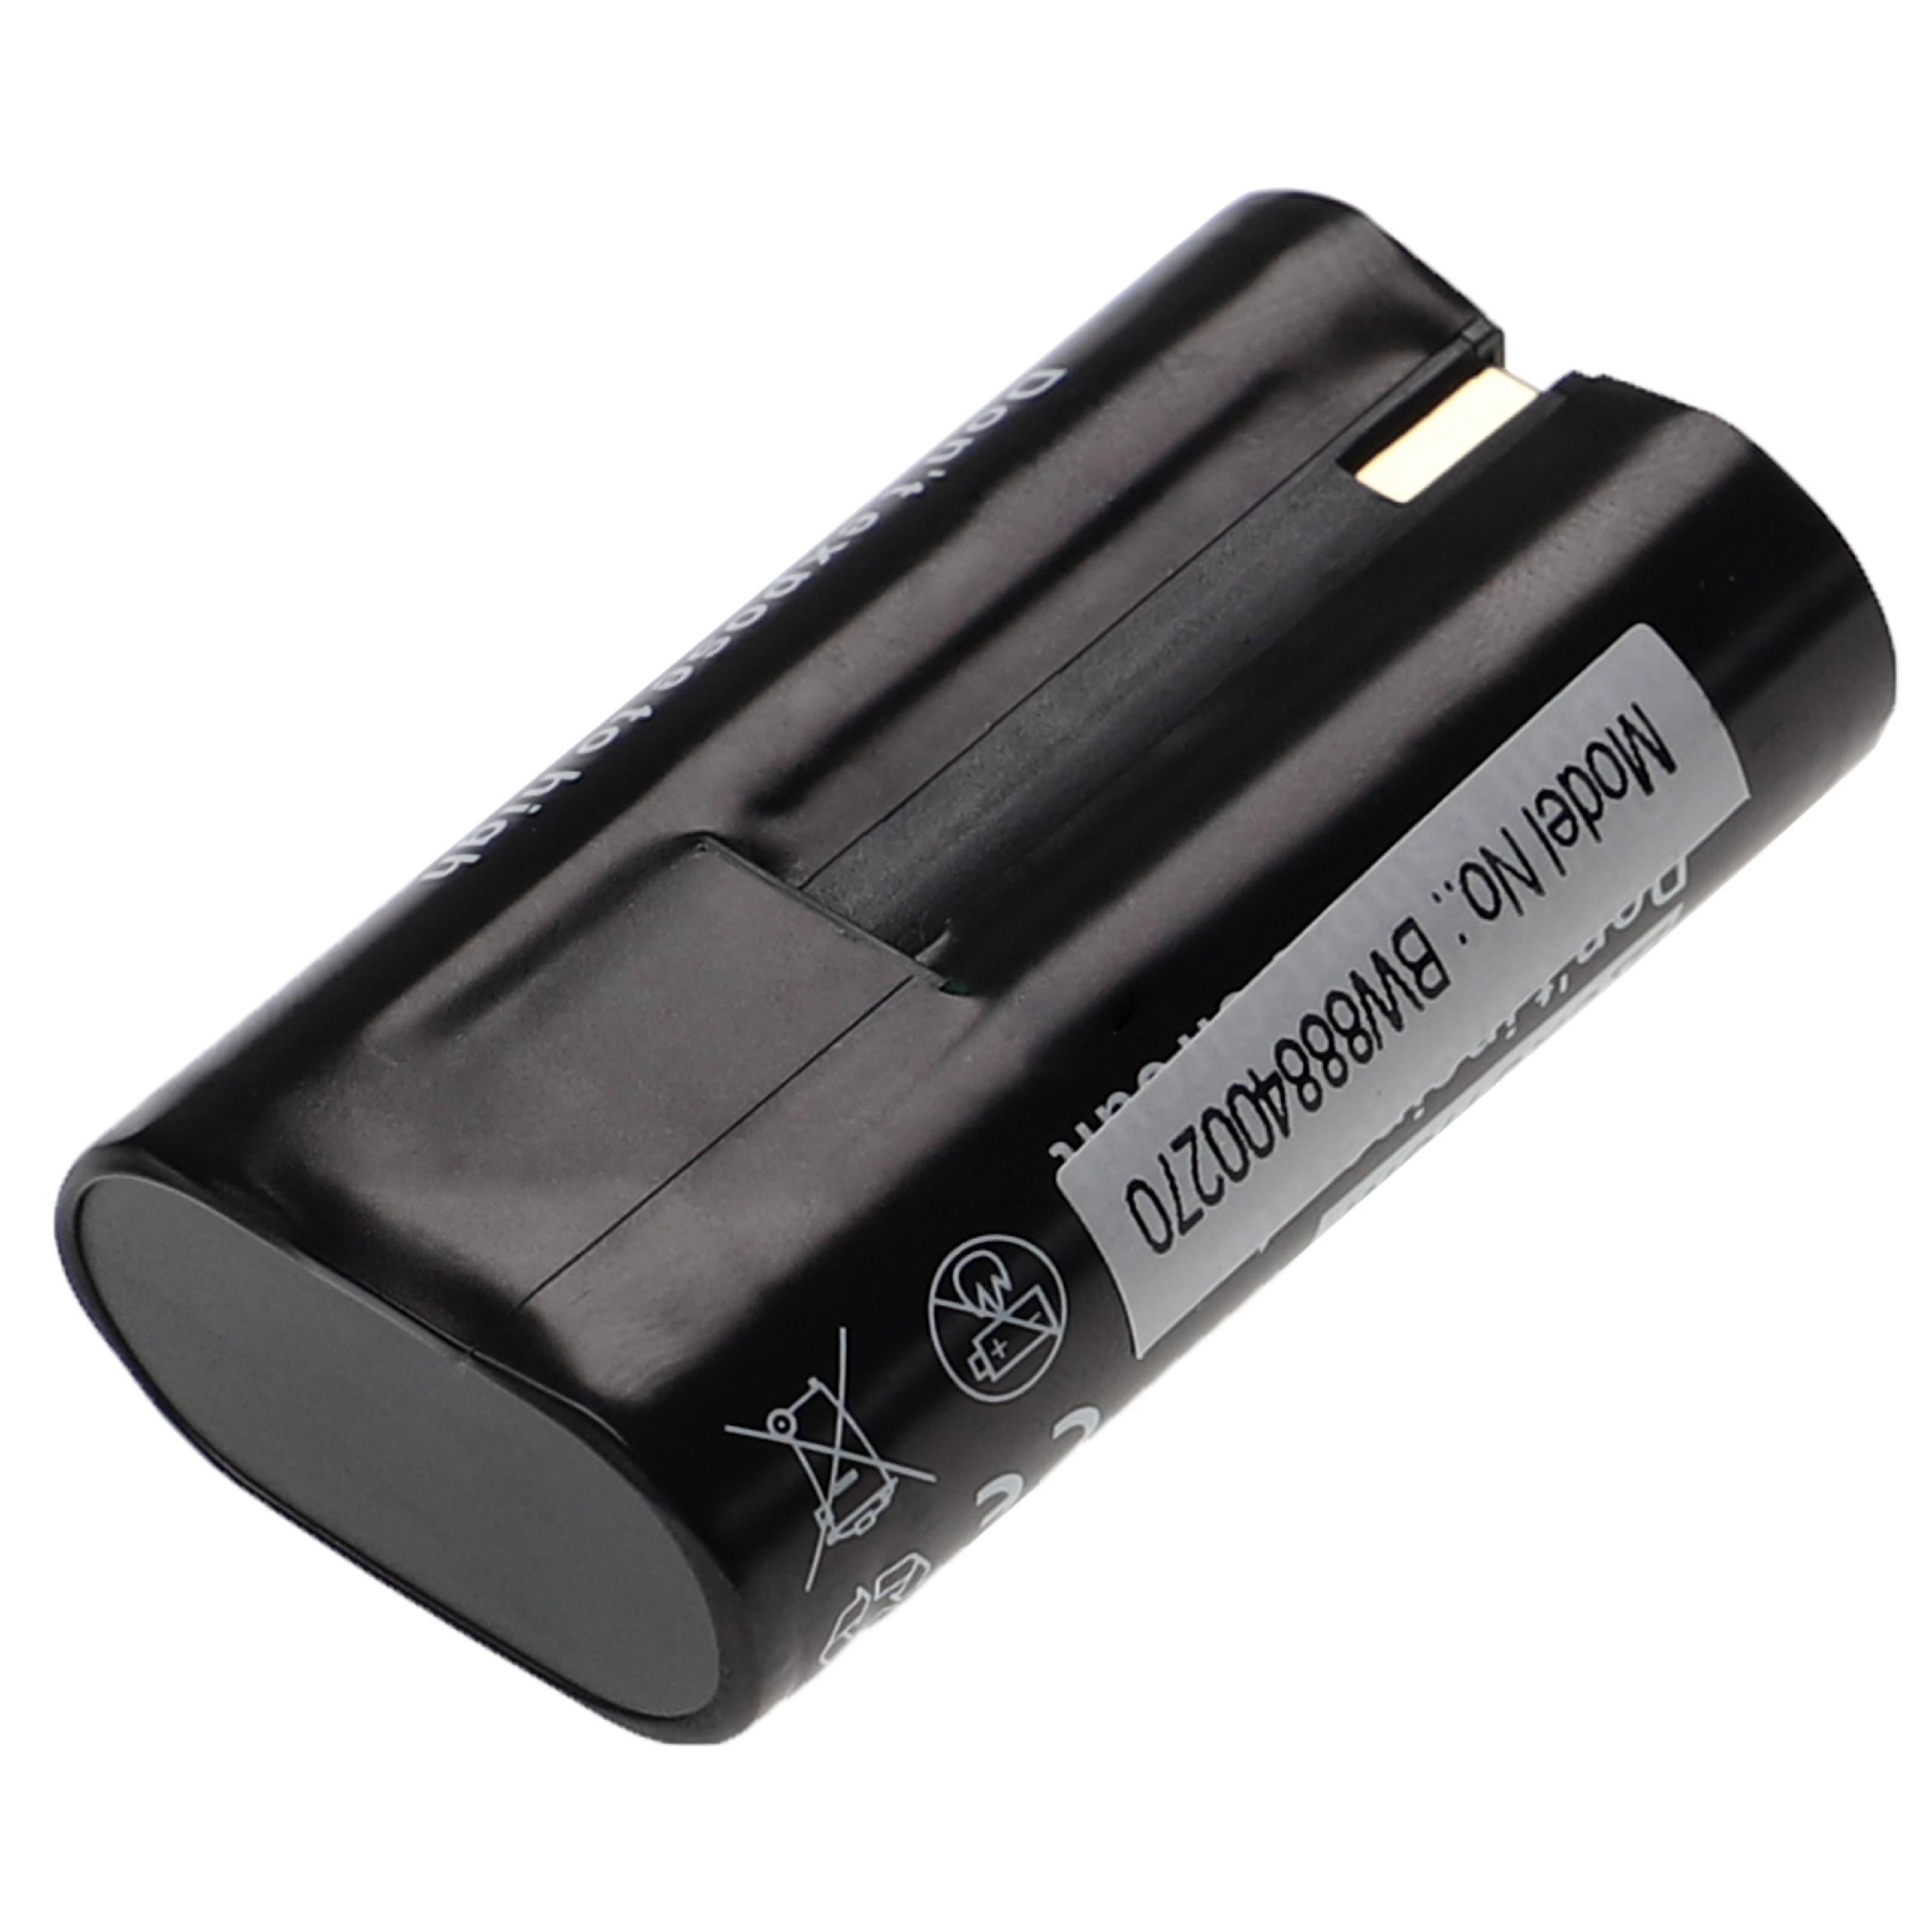 Batterie remplace Kodak RB50, Klic-8000 pour appareil photo - 1600mAh 3,6V Li-ion